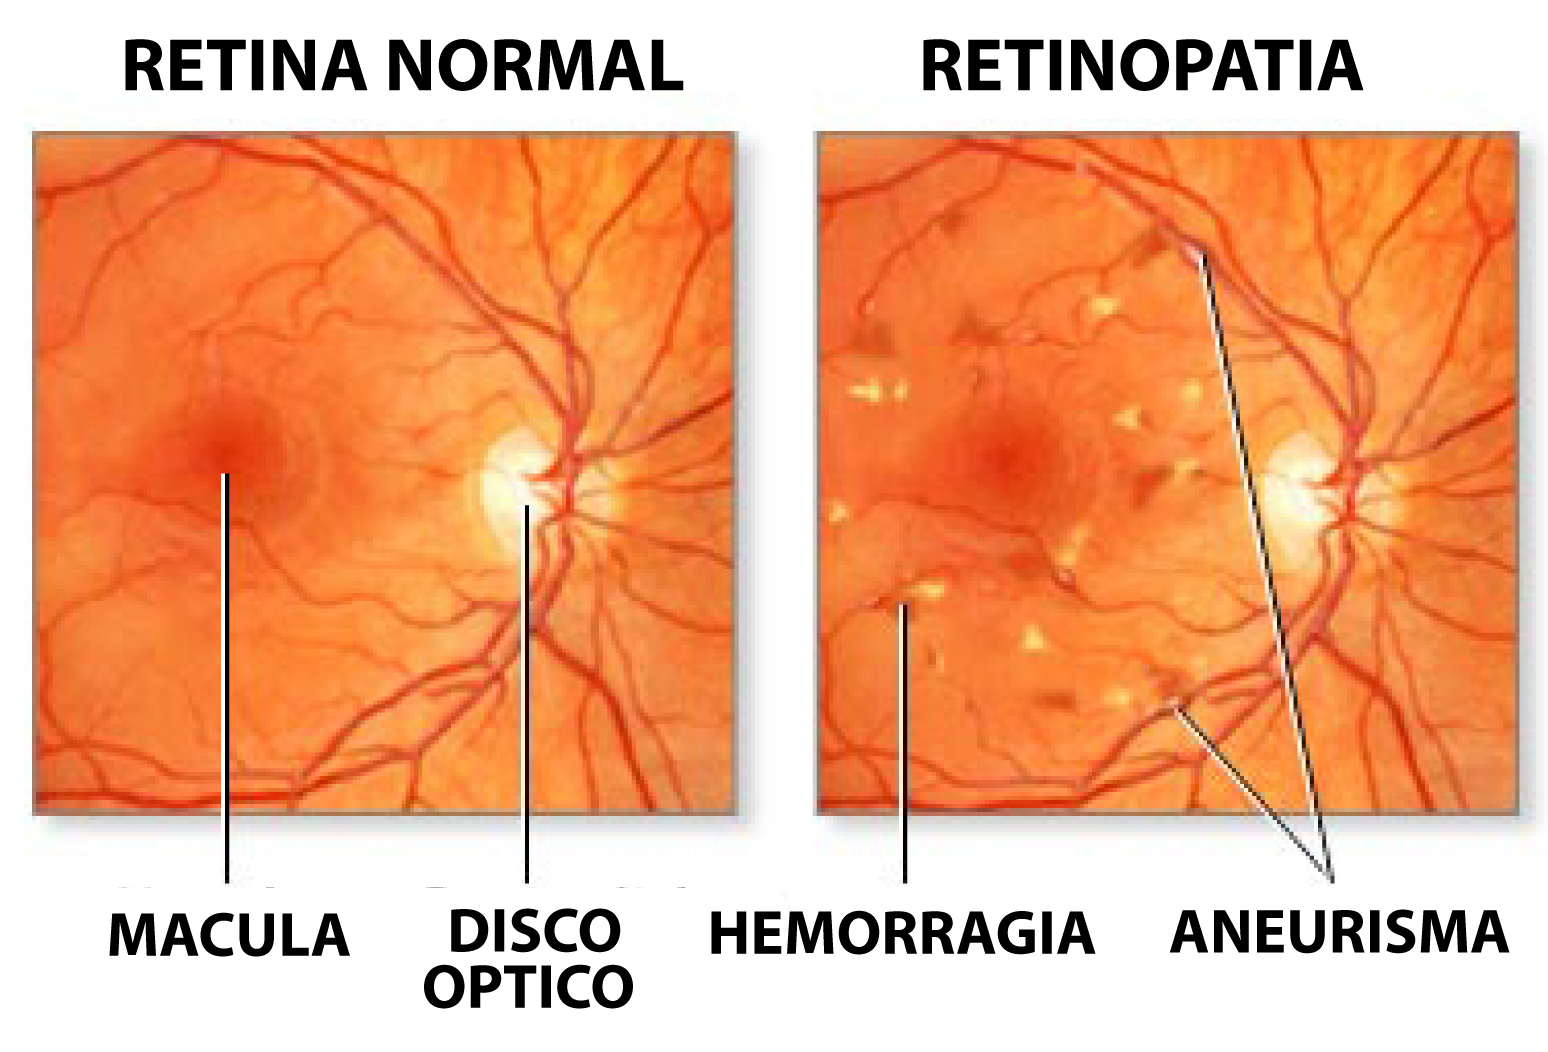 Ангиопатия сосудов сетчатки что это. Диабетическая ретинопатия глазное дно. Диабетическая ангиопатия глазное дно. Гипертоническая ретинопатия глазное дно. Ангиопатия и ретинопатия сетчатки.